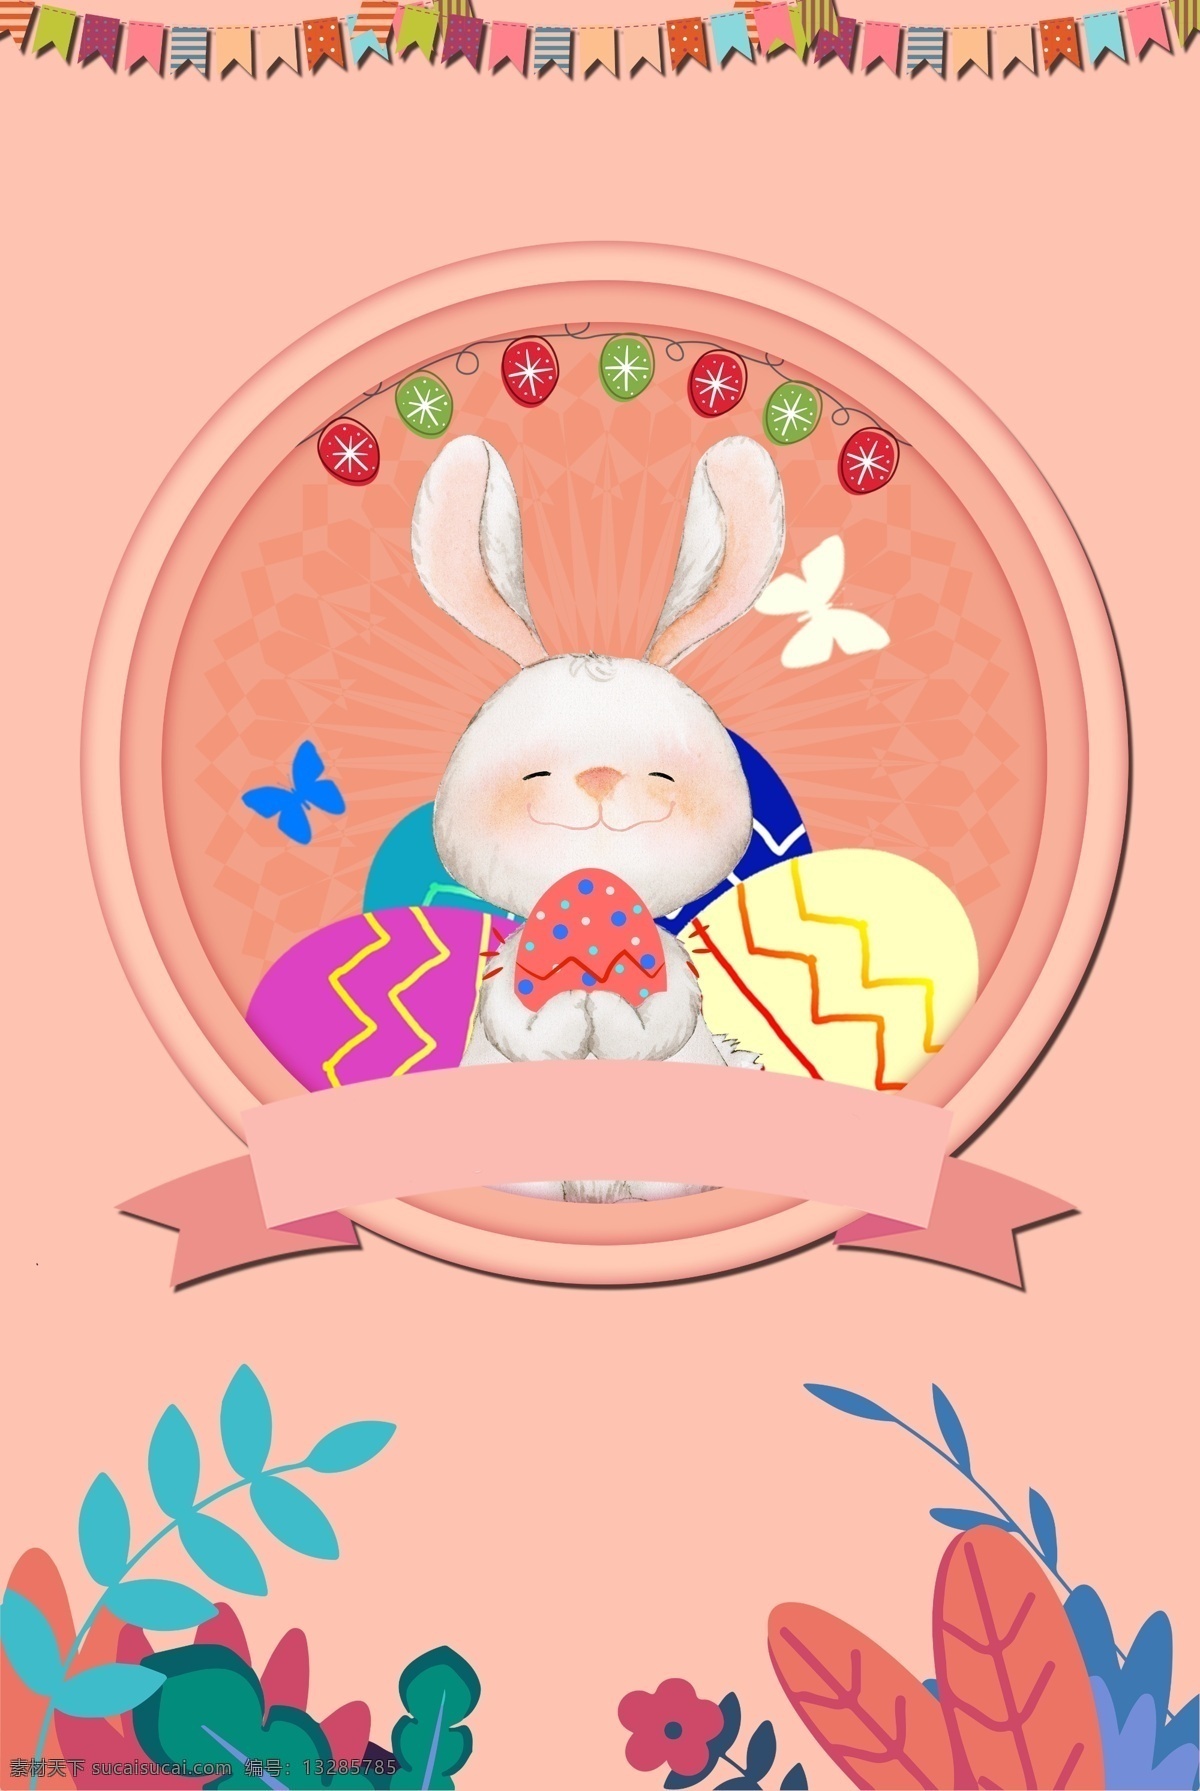 多彩 复活节 彩蛋 小 兔子 背景 海报 小兔子 粉色 图形 banner 轮播 开心